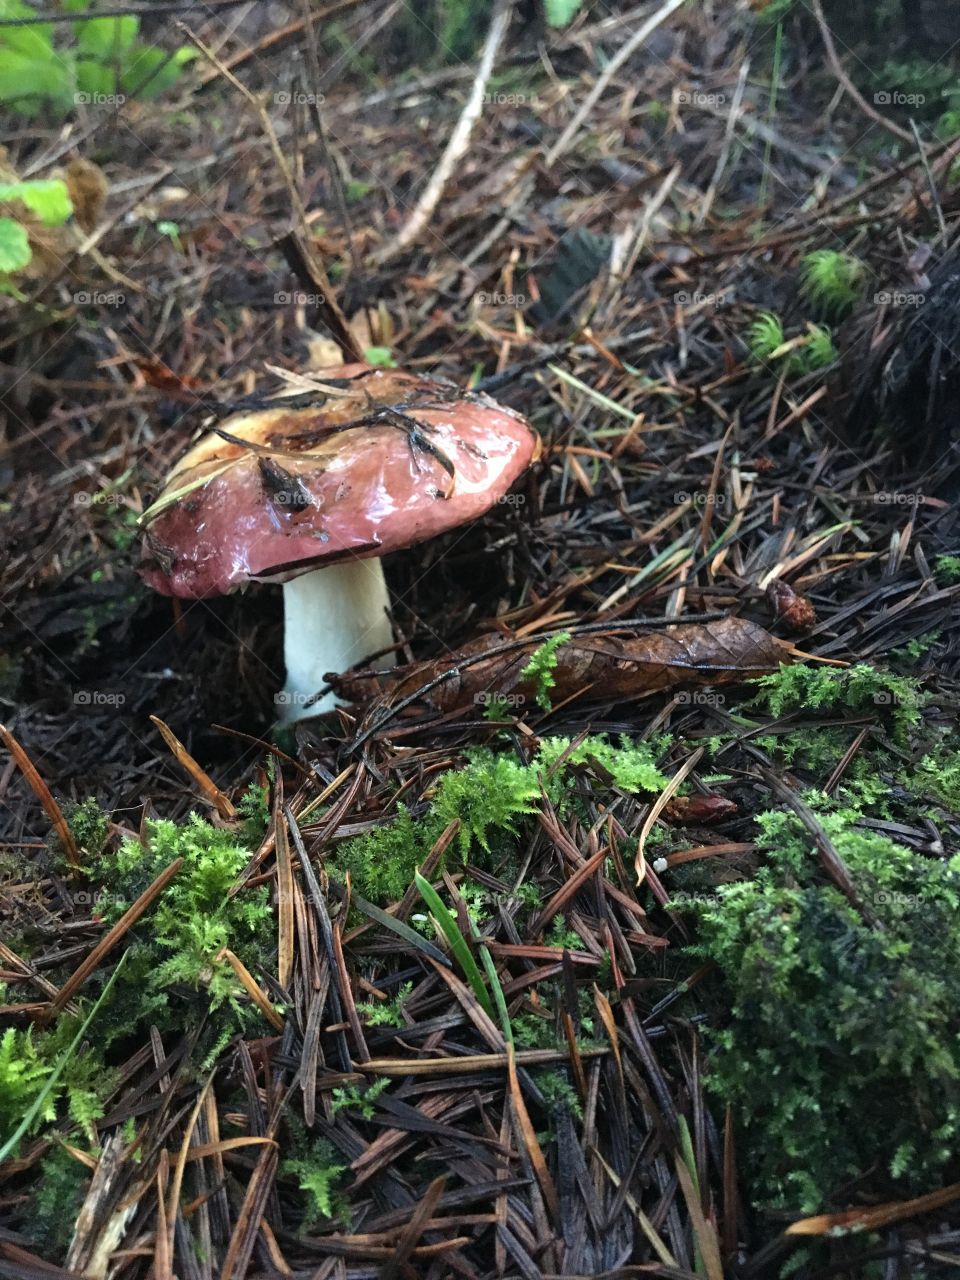 Mushroom growing on land